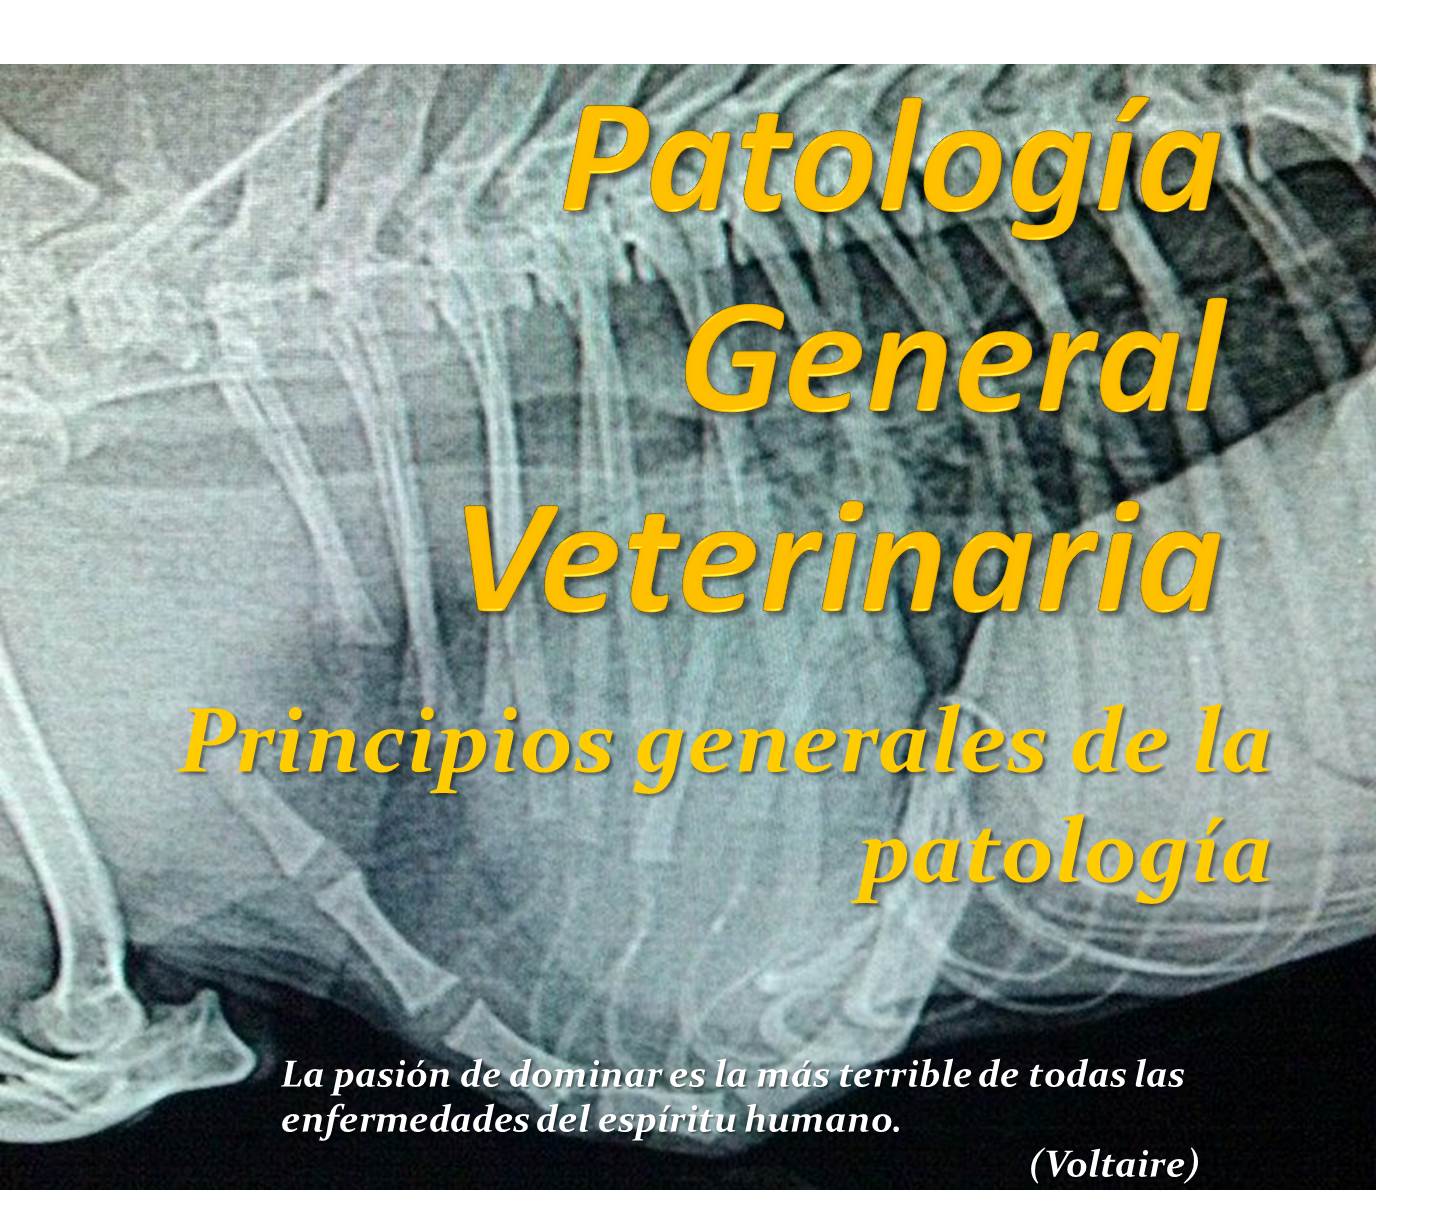 Patología general veterinaria Grupo 2 